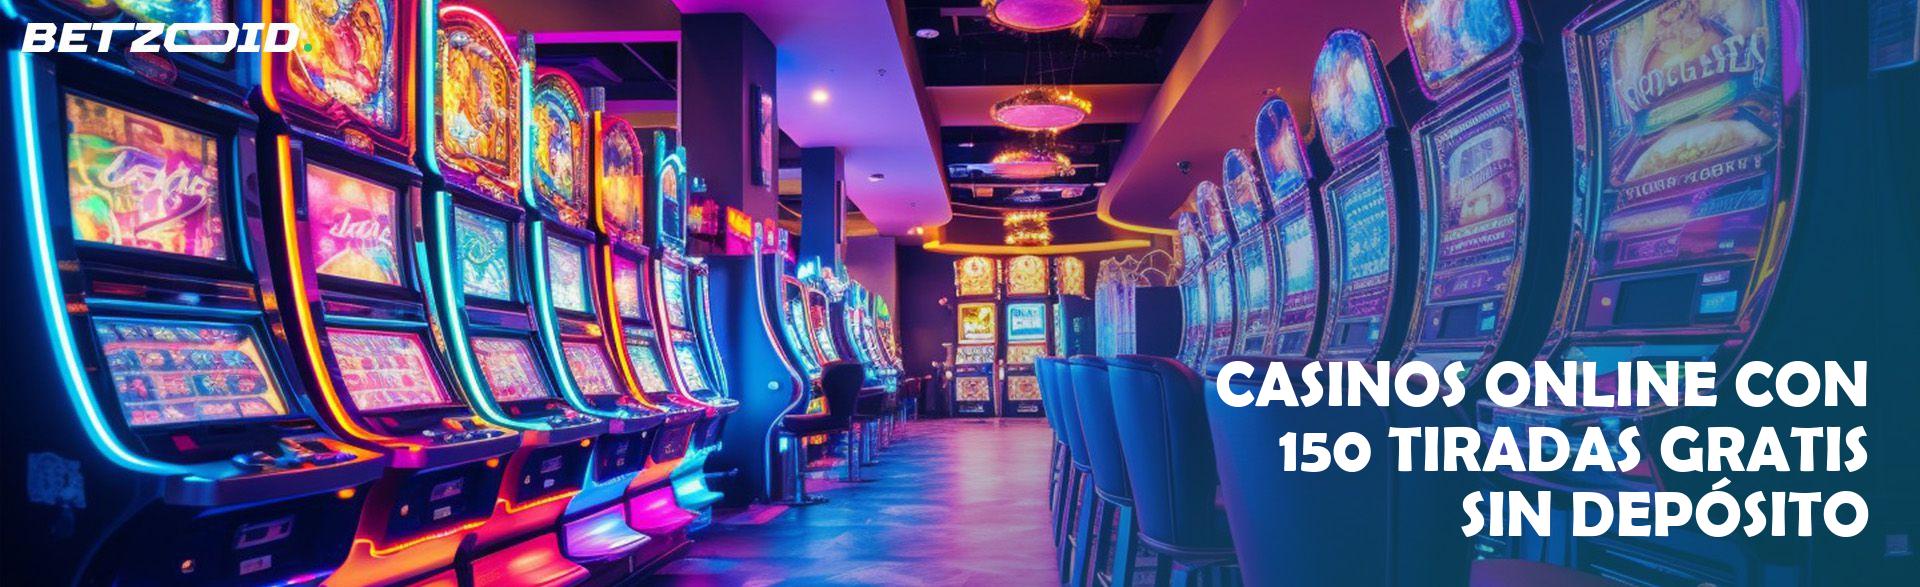 Casinos Online con 150 Tiradas Gratis sin Depósito.